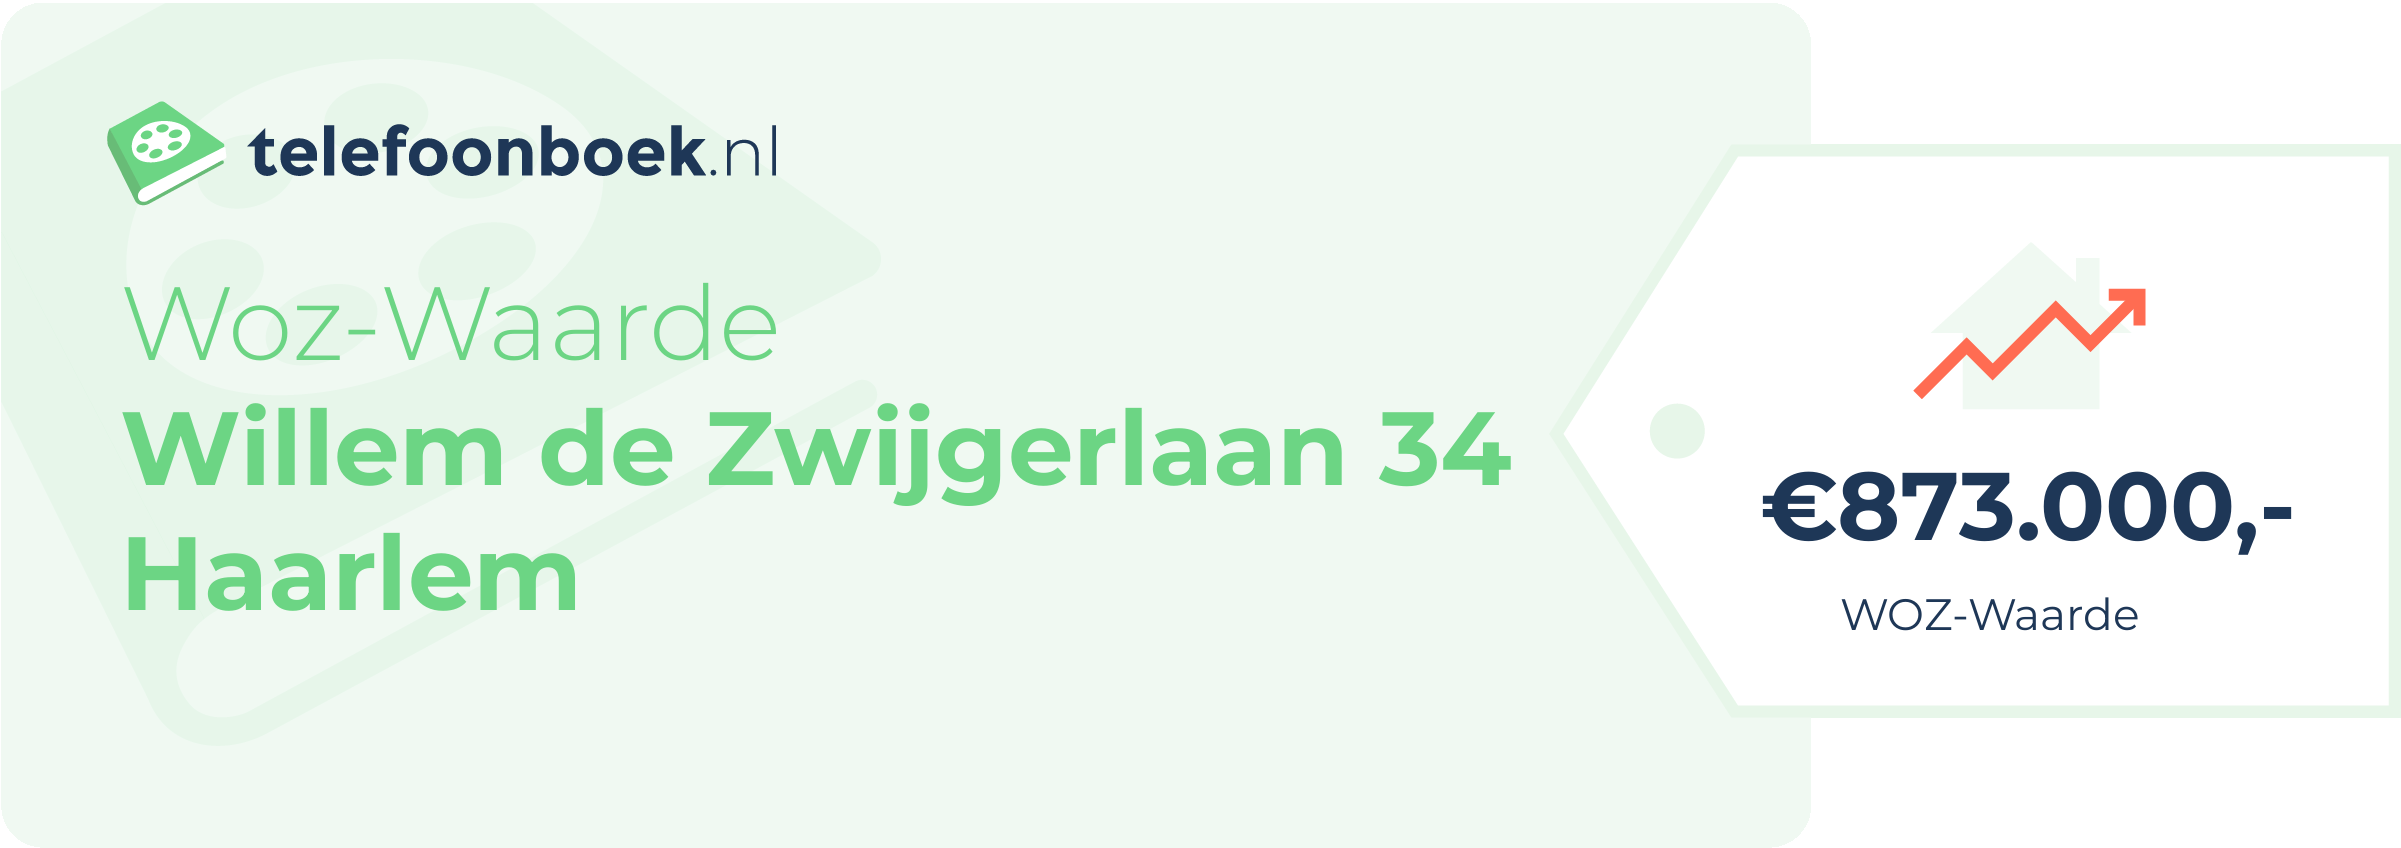 WOZ-waarde Willem De Zwijgerlaan 34 Haarlem